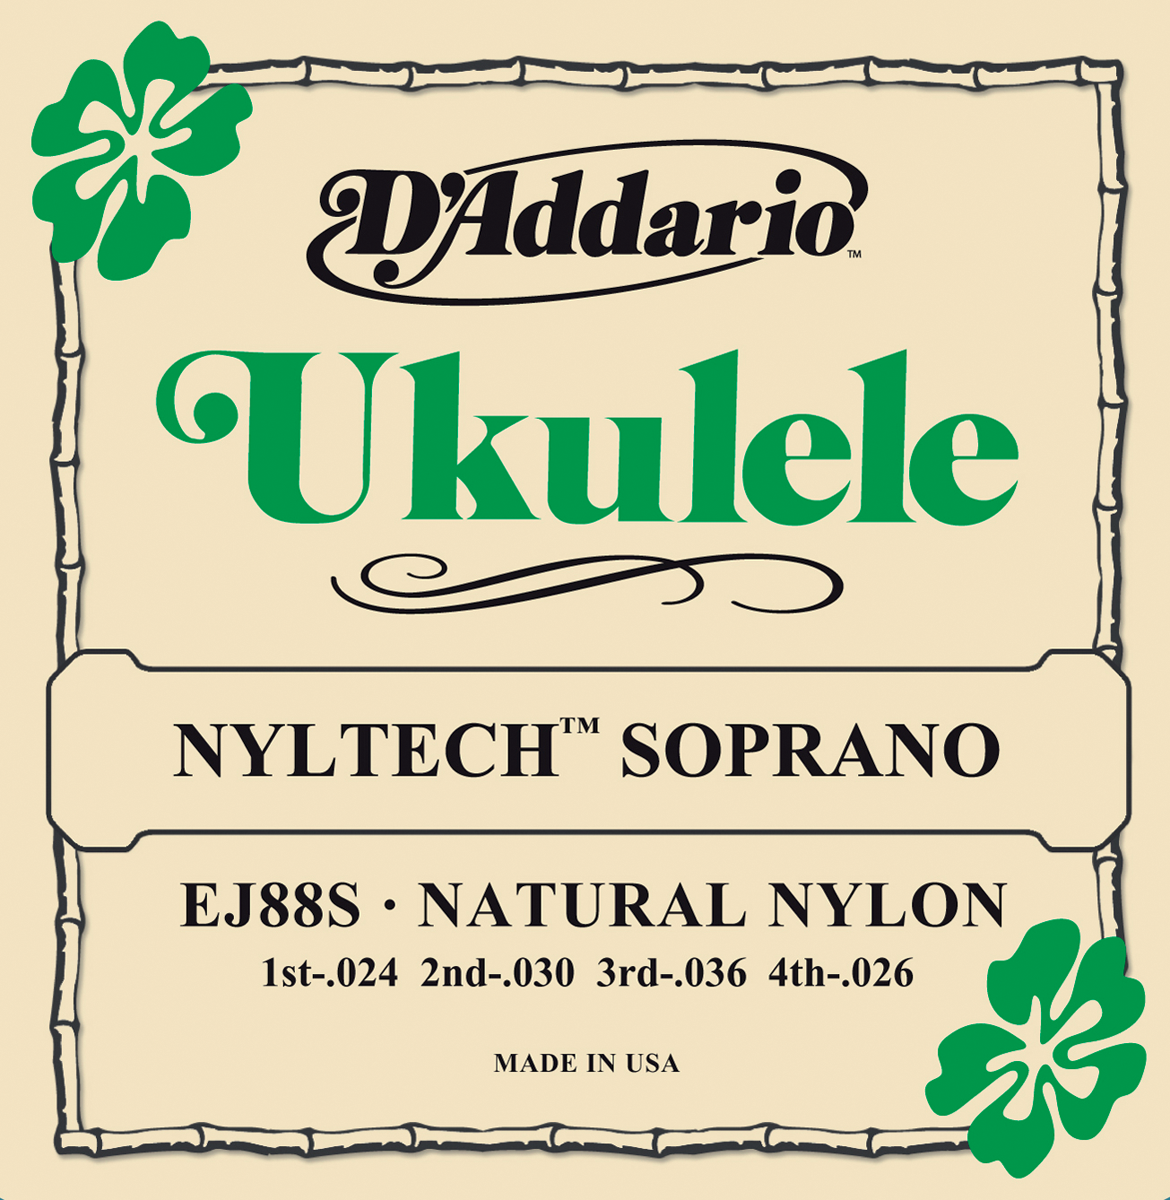 D'addario Ukulele Soprano Nyltech 024.026 Ej88s - Cordes Ukelele - Variation 1